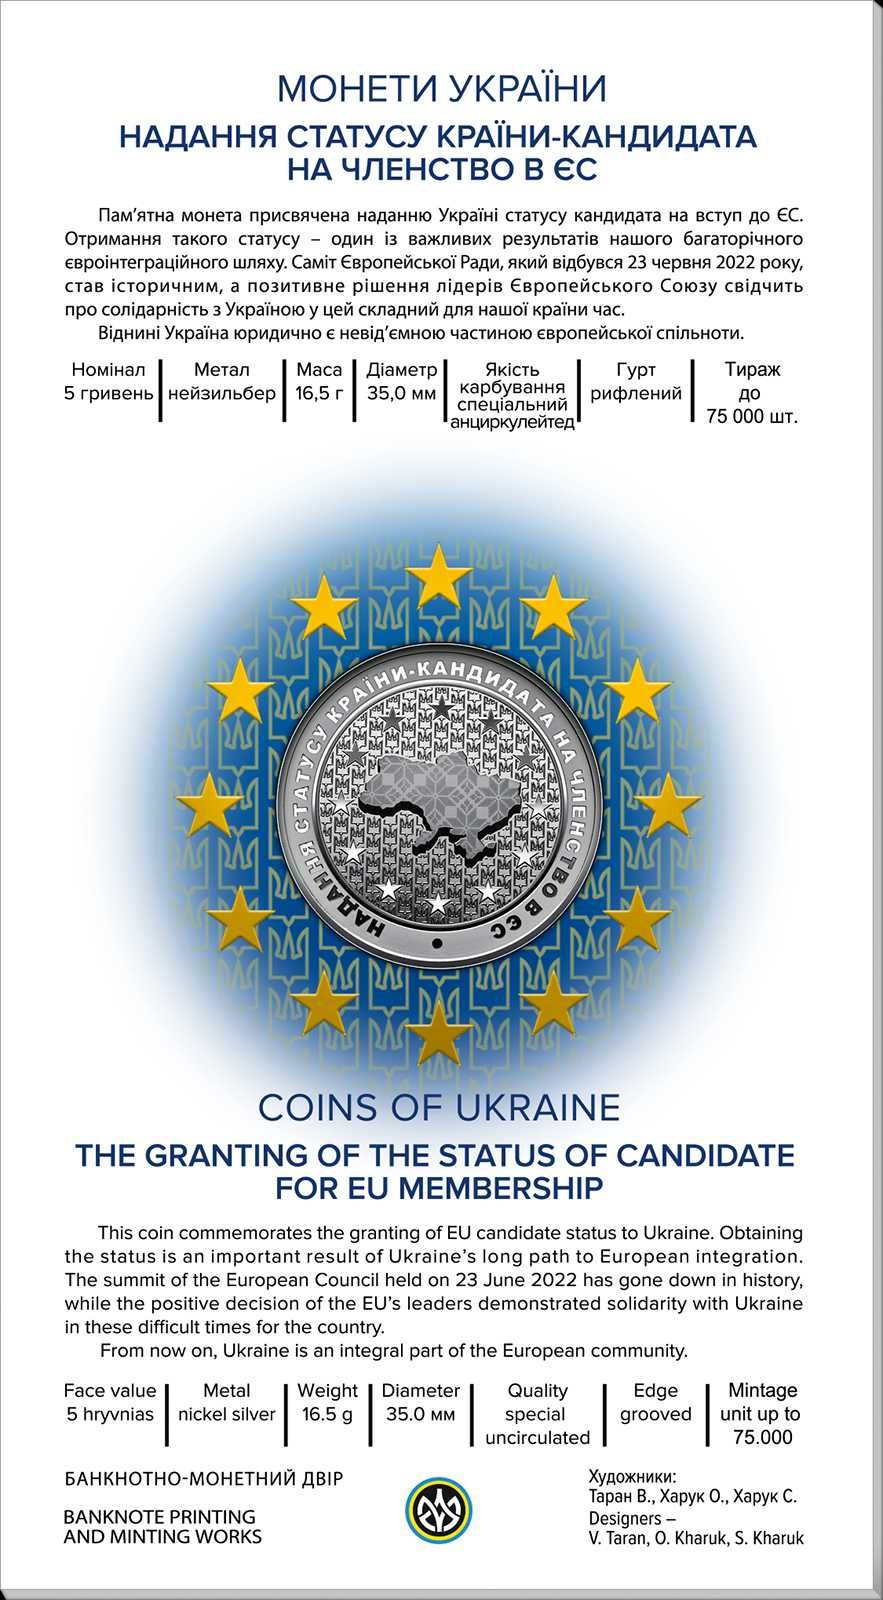 Надання статусу країни-кандидата на членство в ЄС у сувенірній упаковц